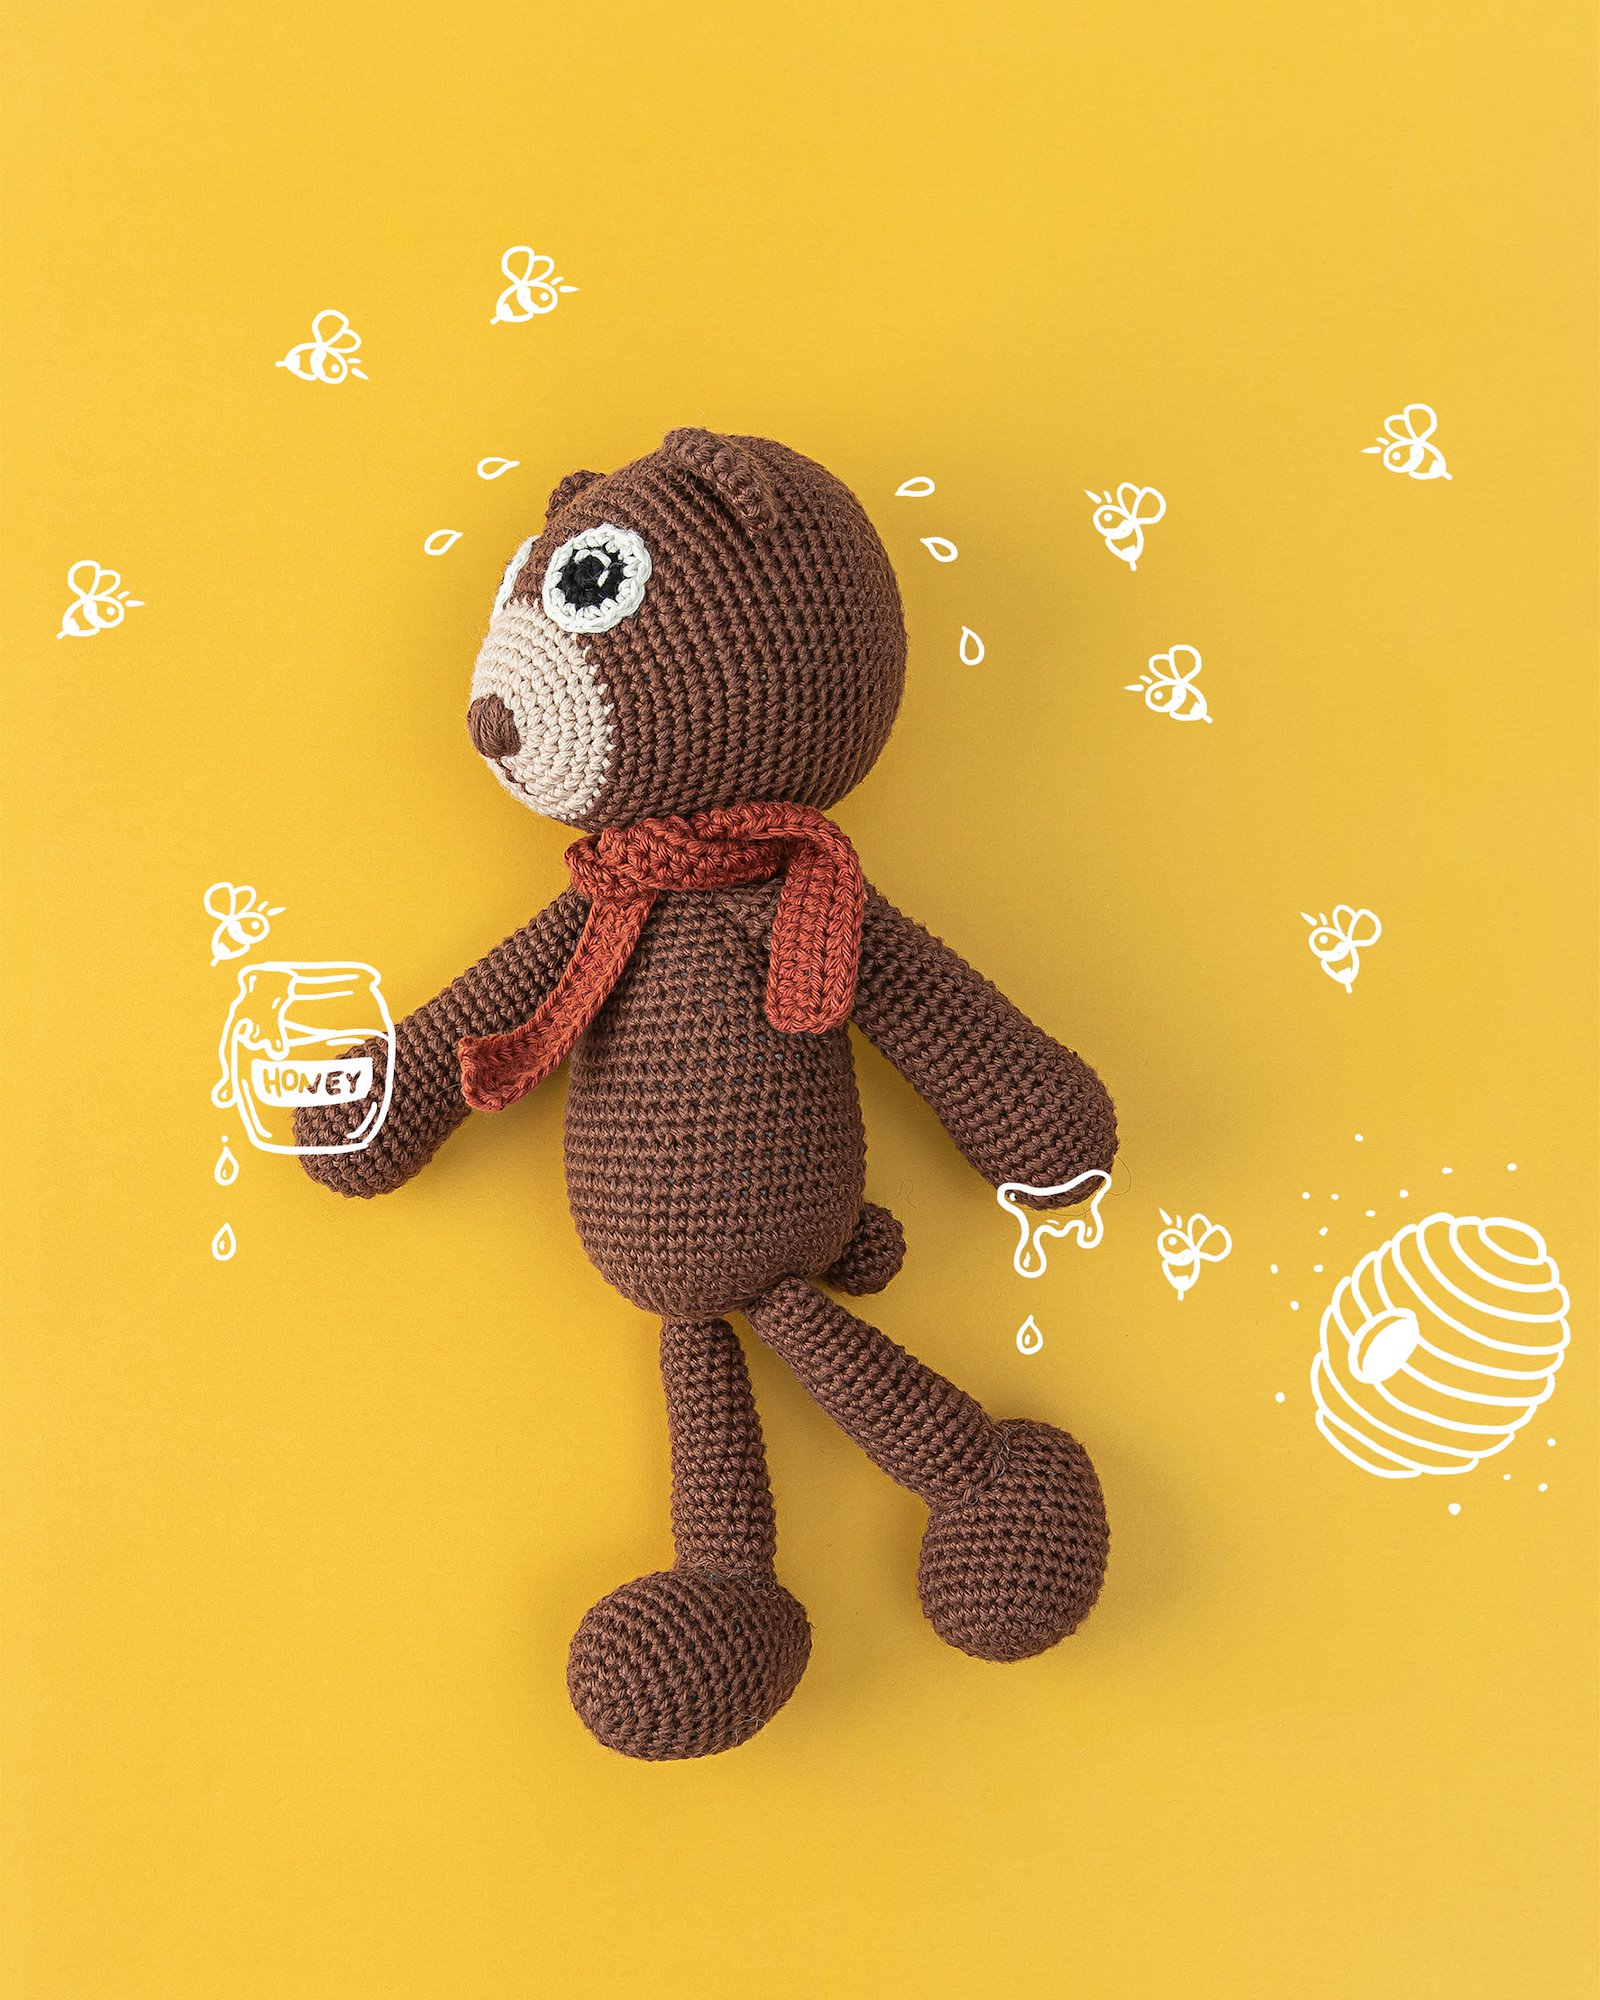 FRAYA crochcet pattern - Boco the bear, cuddly toys FRAYA7034_image.jpg